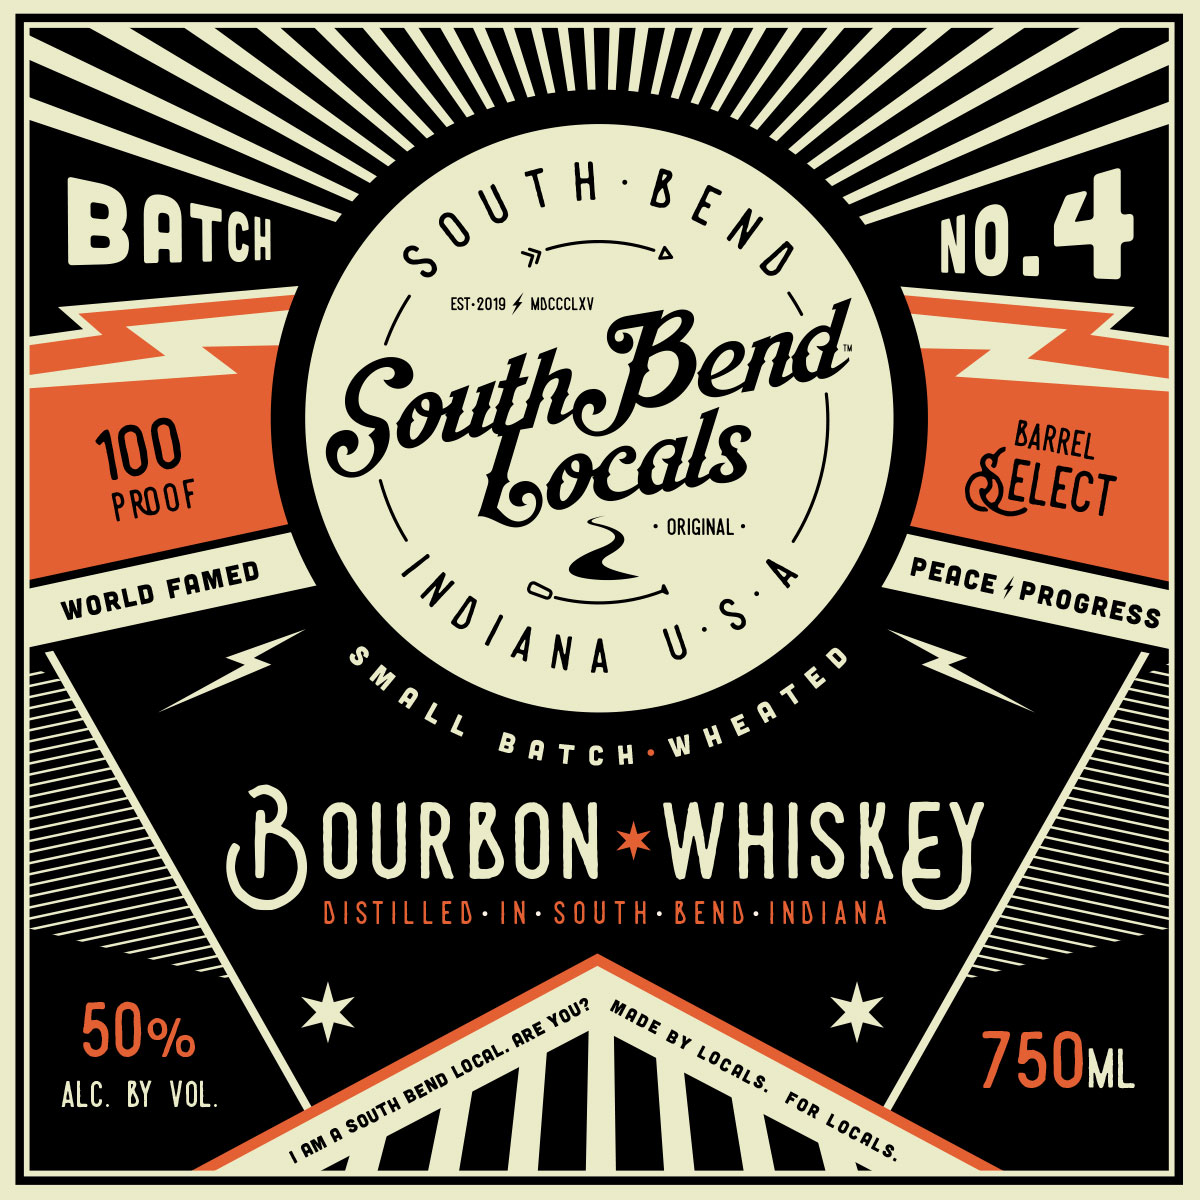 South Bend Locals Bourbon Batch No 4